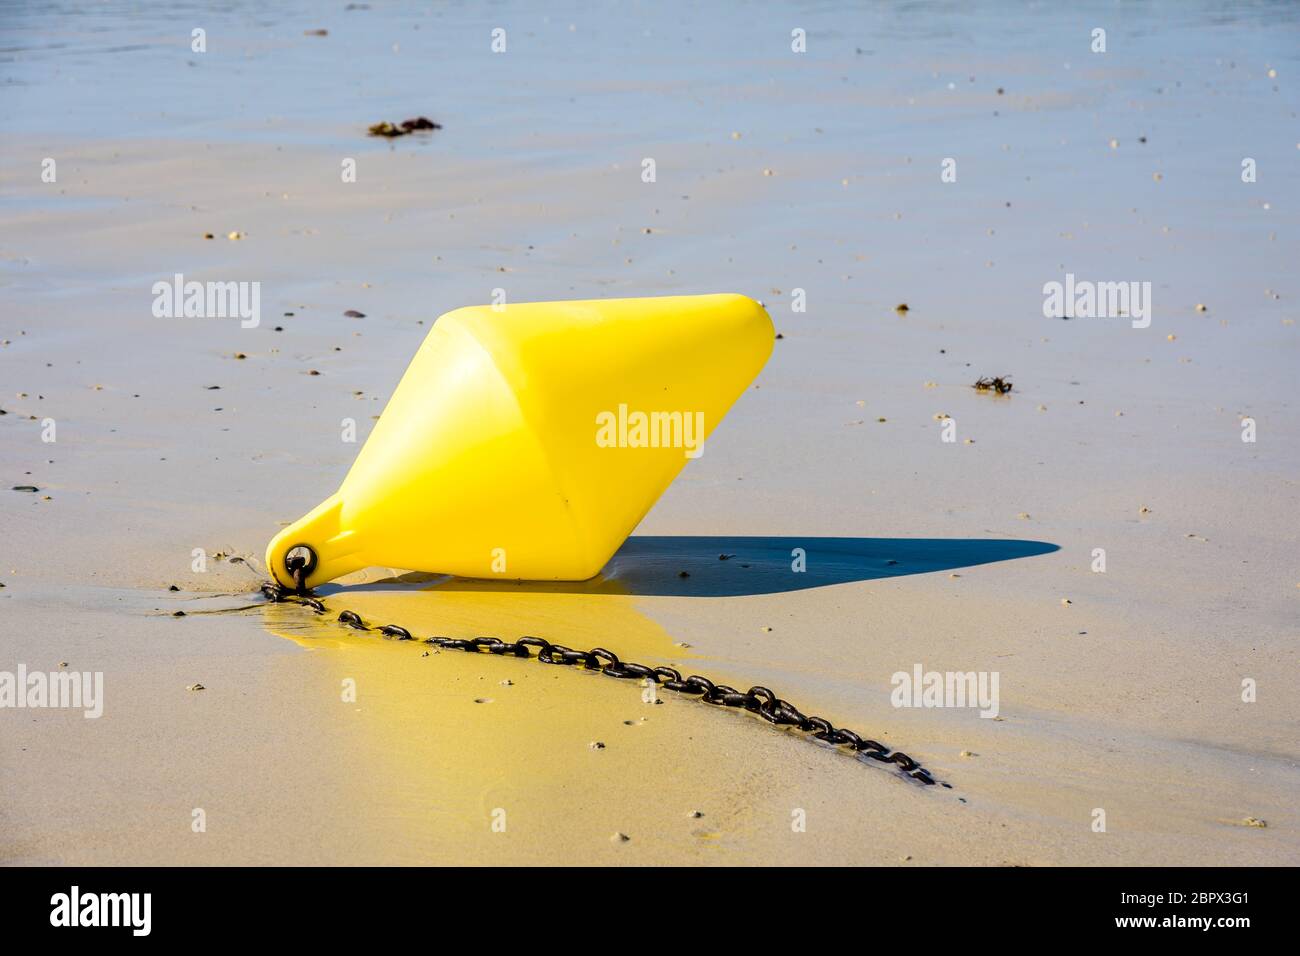 Una boya amarilla grande y su cadena de anclaje, utilizada como marcador de canal de lanzamiento, tumbado en la arena húmeda a marea baja en la playa al sol. Foto de stock